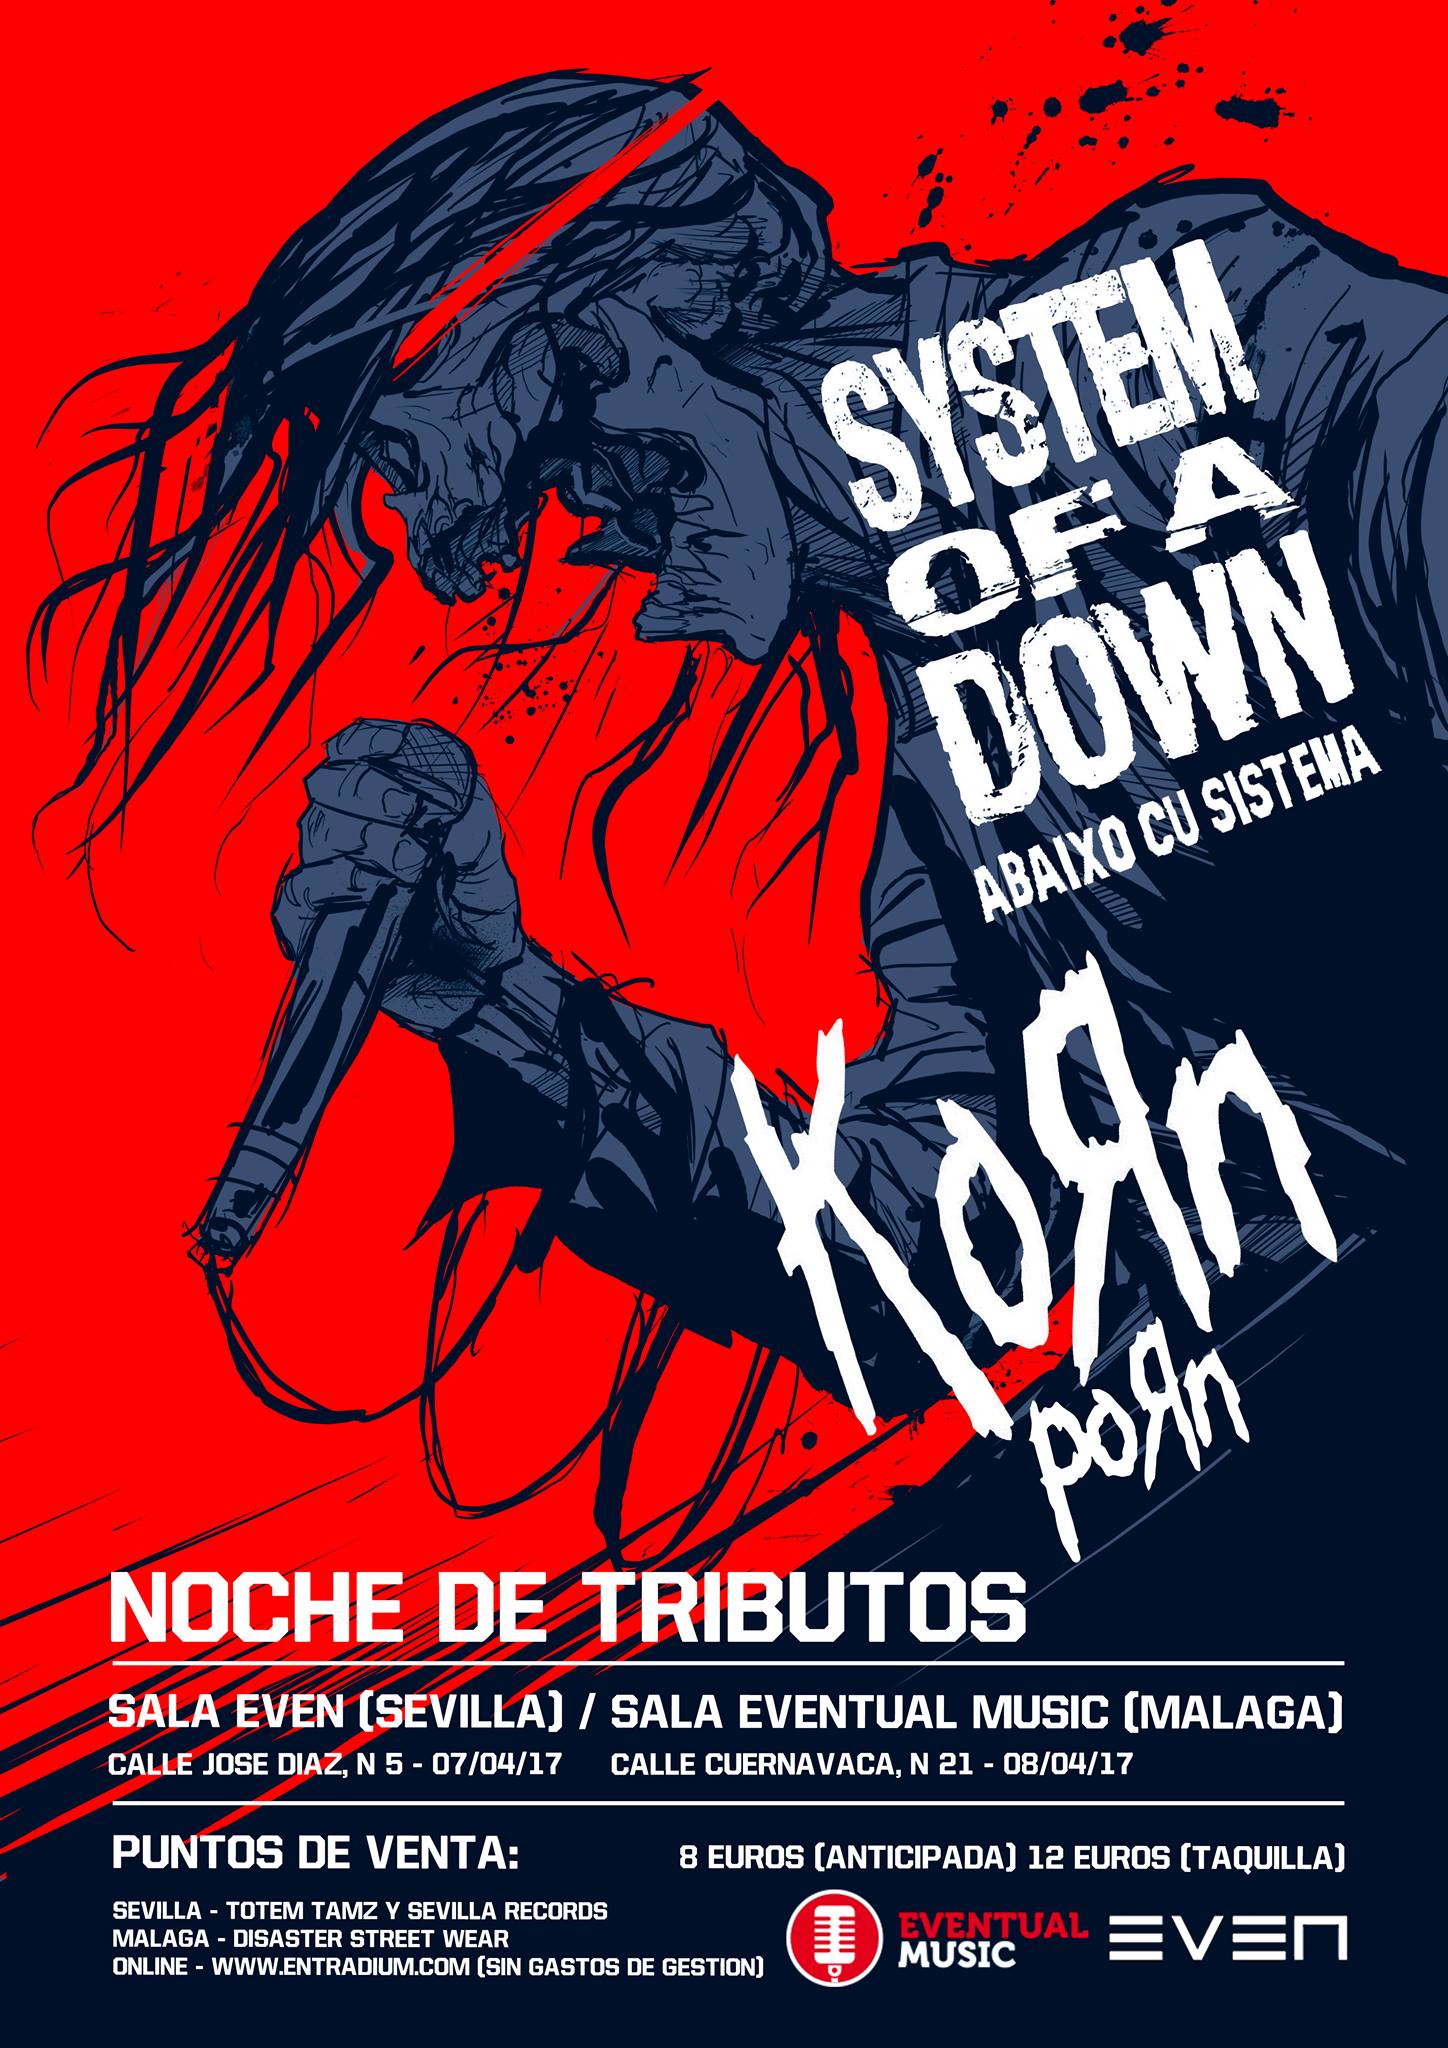 SYSTEM OF A DOWN (Abaixo cu sistema) - KORN (Porn) -- NOCHE DE TRIBUTOS